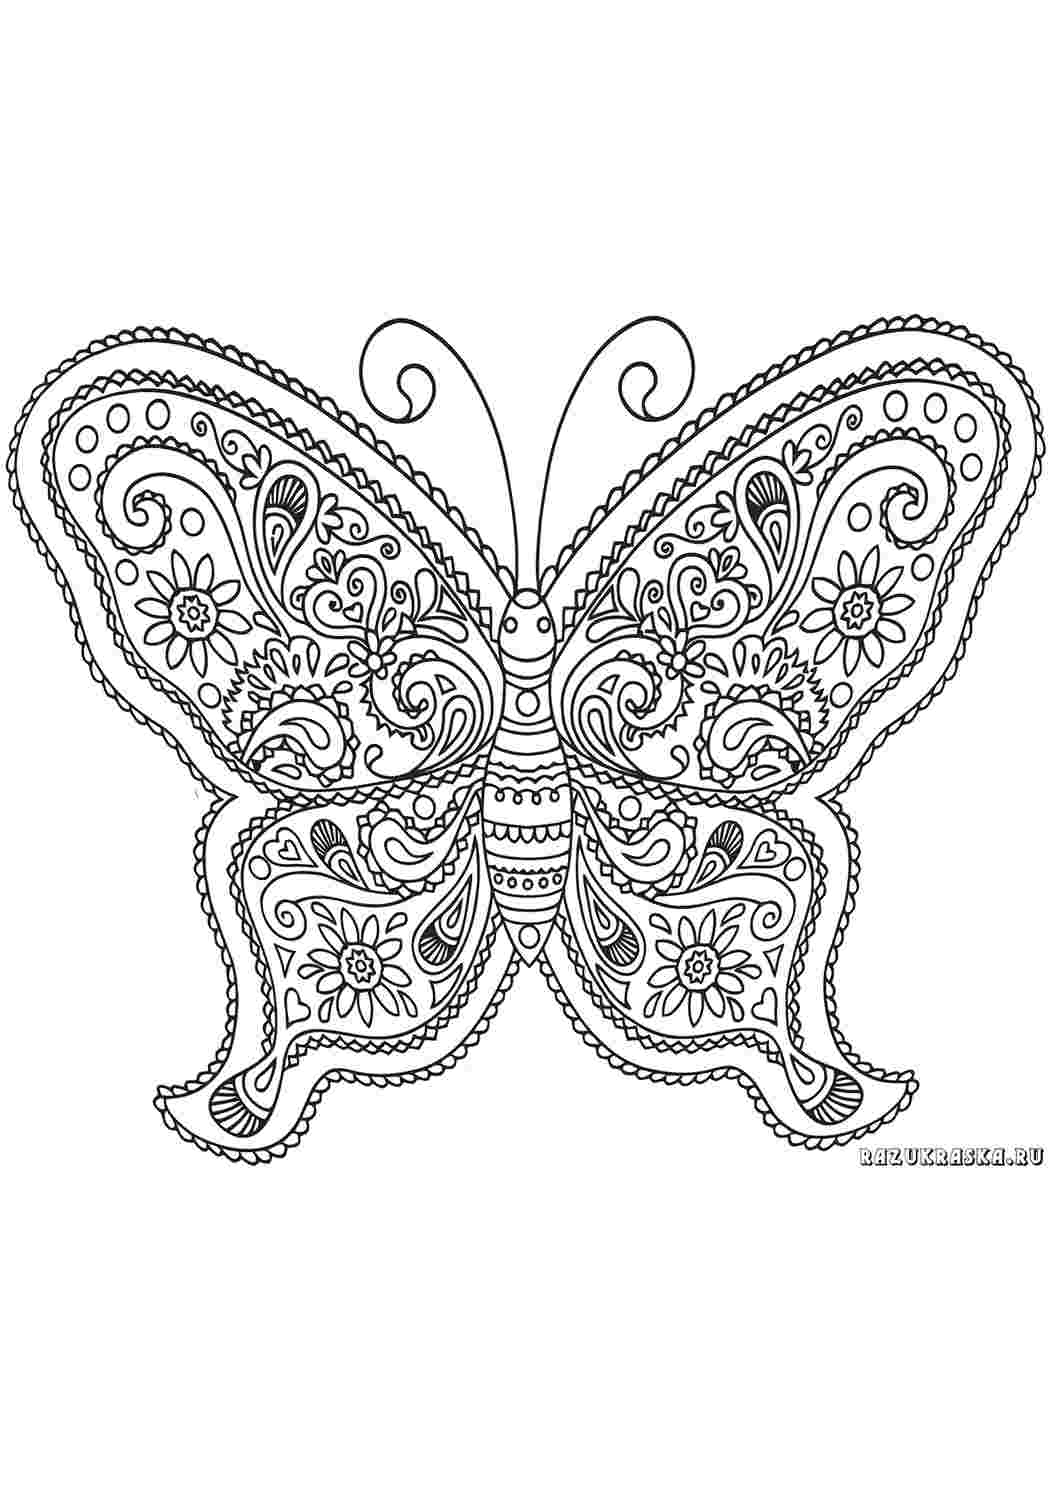 Сайт антистресс. Раскраска антистресс бабочка. Раскраска узоры для девочек. Бабочка антистресс раскраска для детей. Орнамент для раскрашивания.